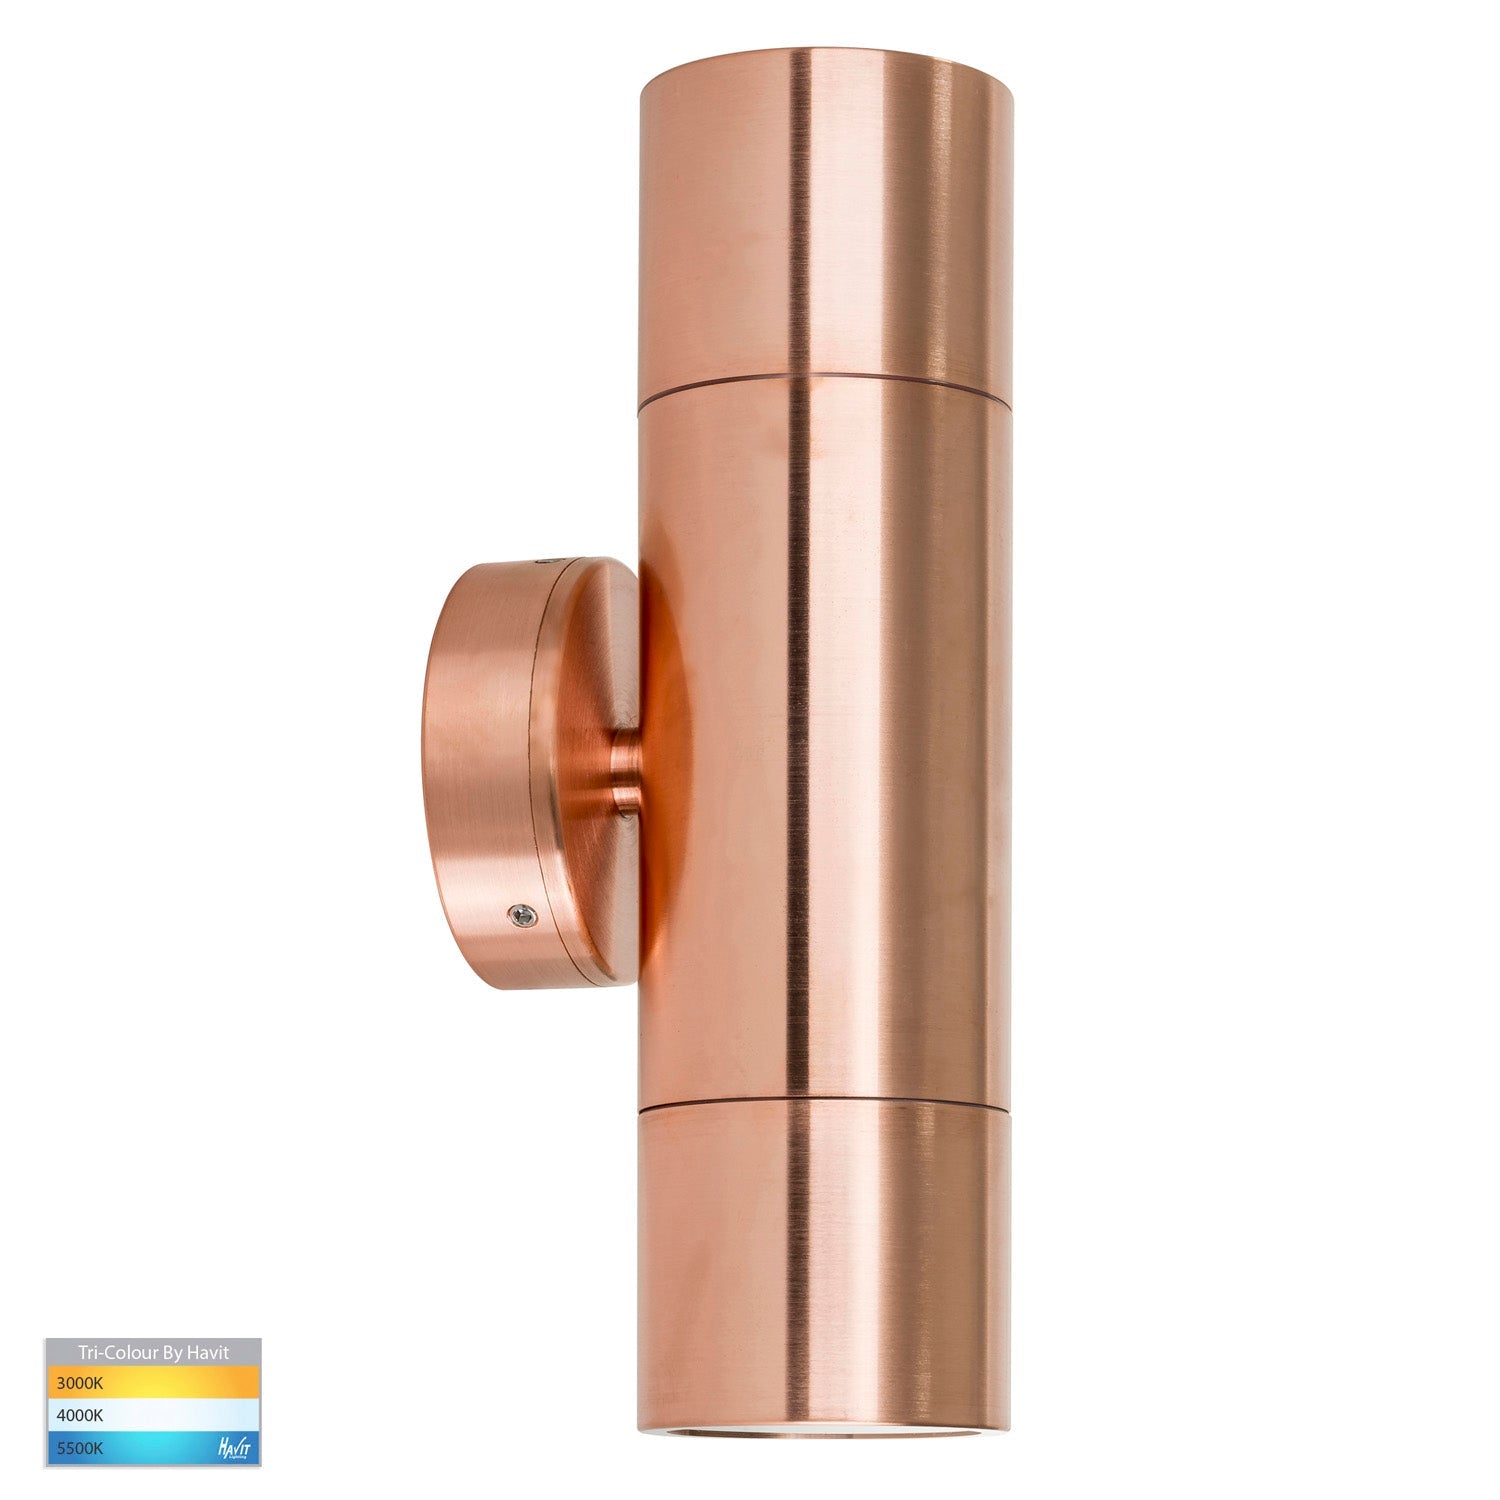 Tivah Up/Down Wall Pillar Light TRI Colour in Copper Havit Lighting - HV1015T-HV1017T - Mases LightingHavit Lighting